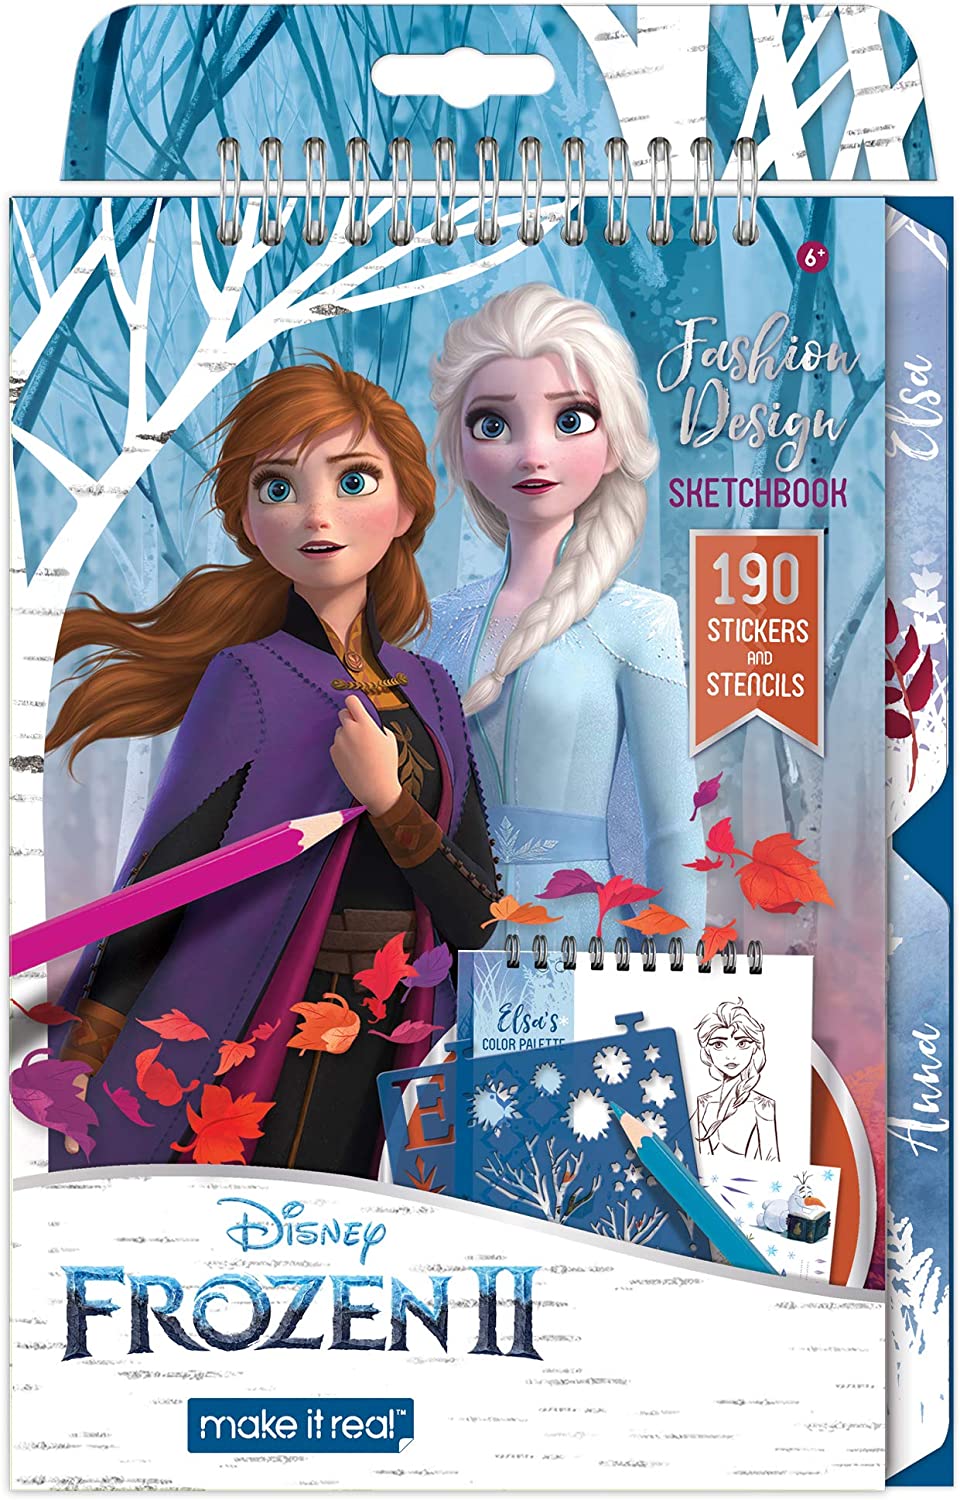 Make It Real Disney Frozen 2 Fashion Design Sketchbook